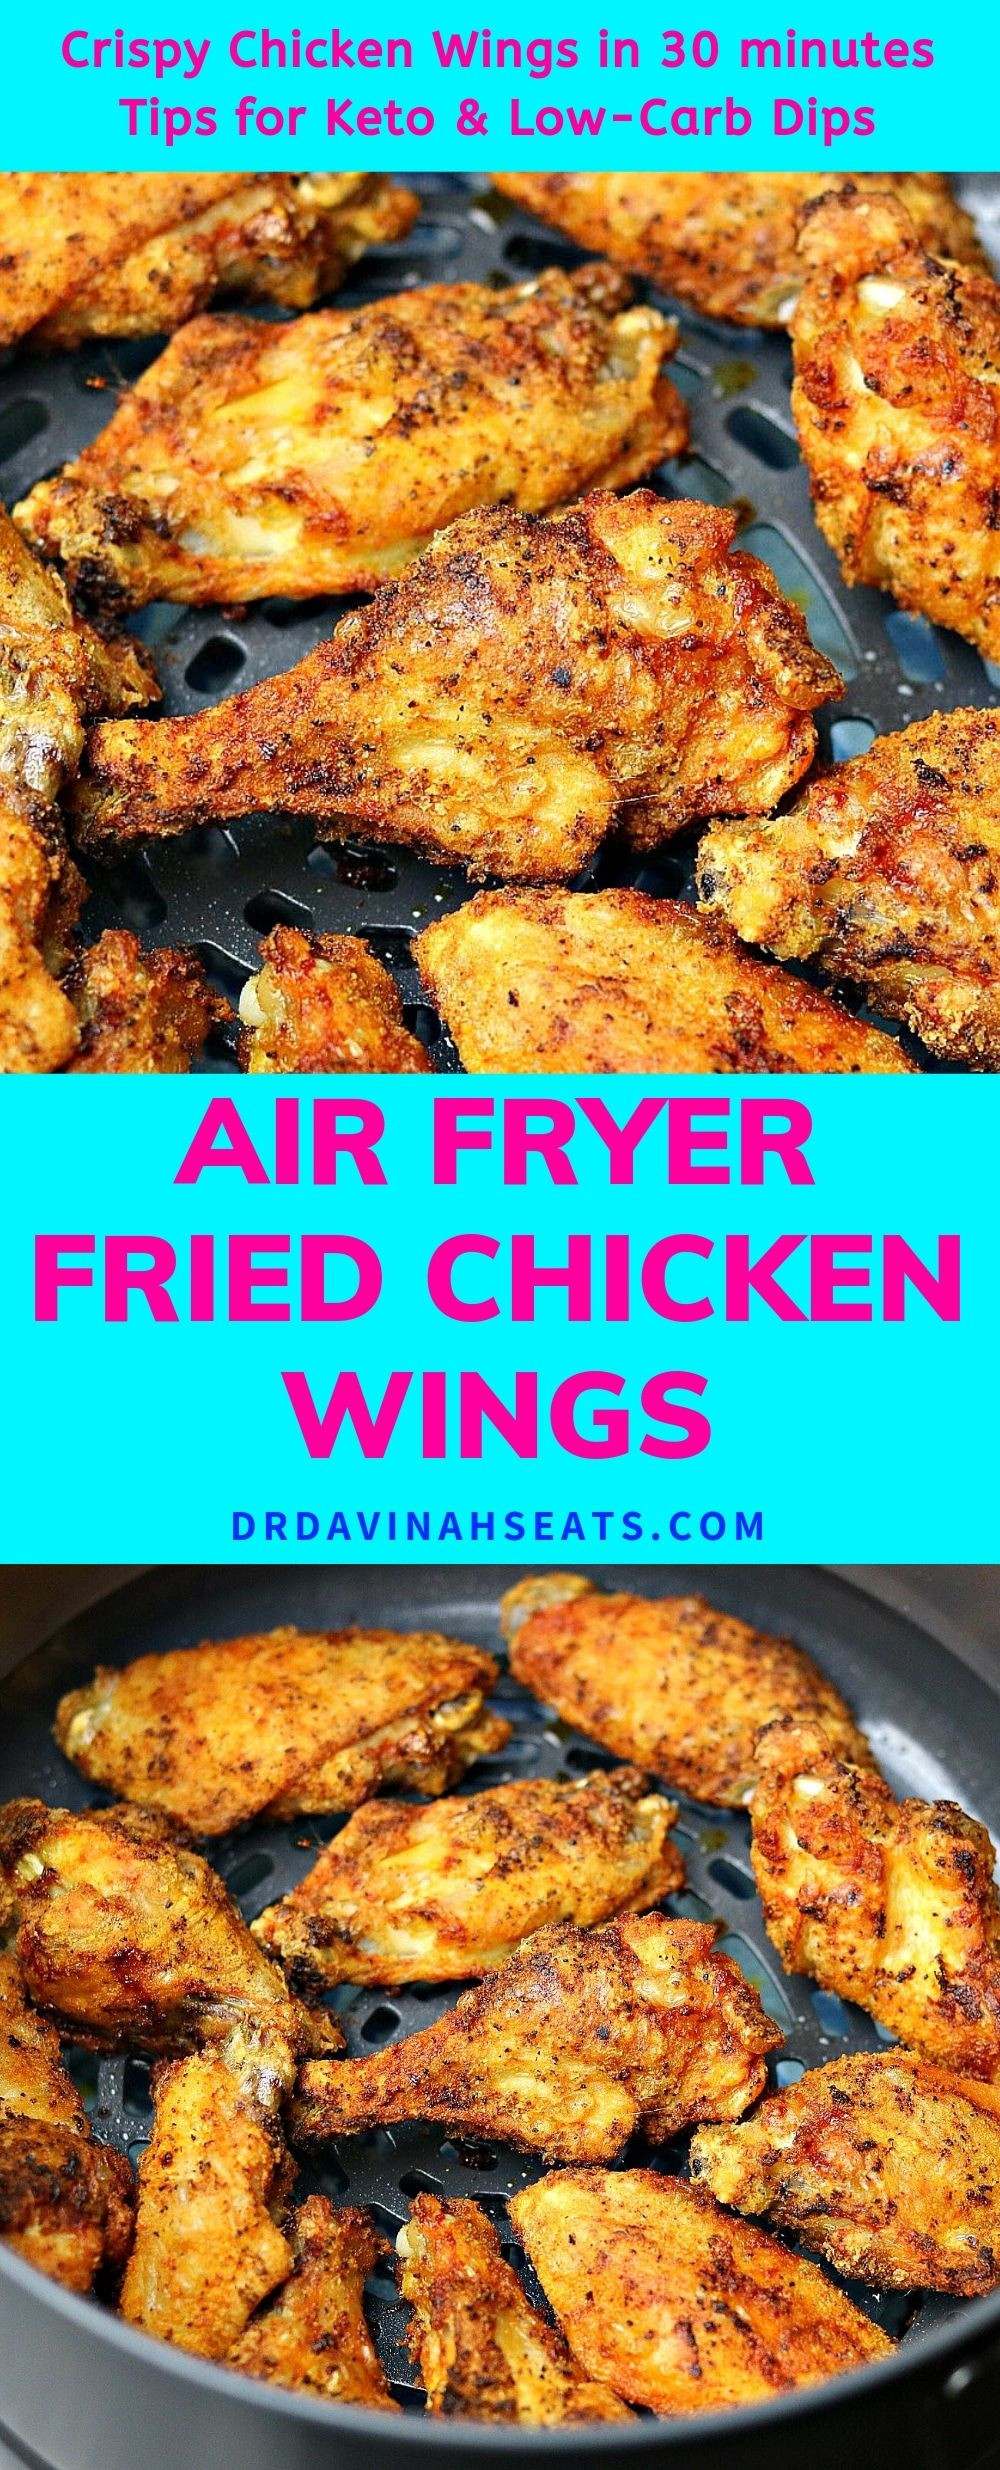 Frozen Chicken Wings In Air Fryer
 Ninja Air Fryer Fried Chicken Wings Recipe